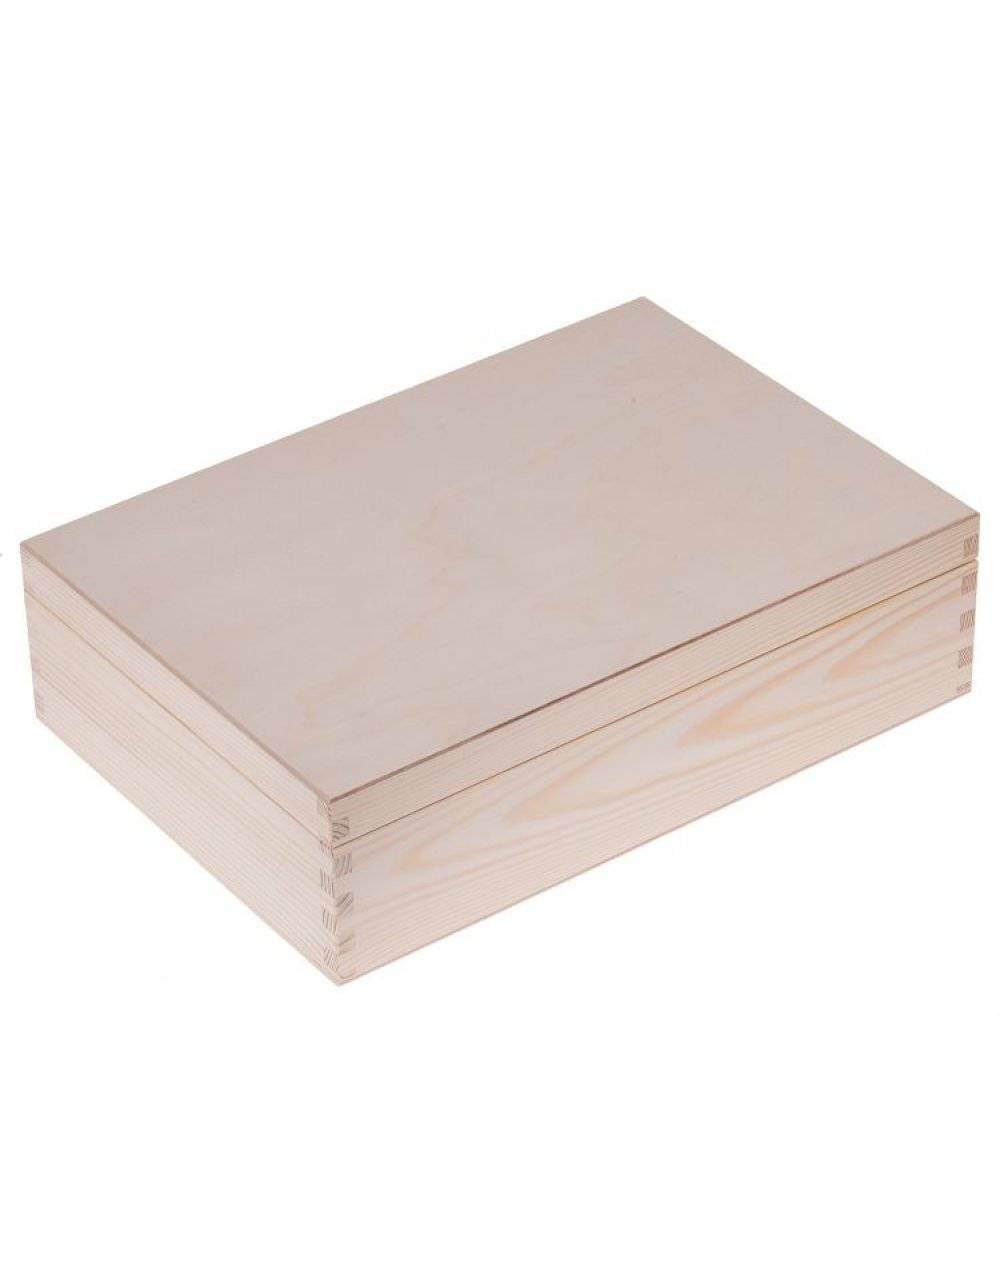 Přírodní dřevěná krabička 35x25x10 cm